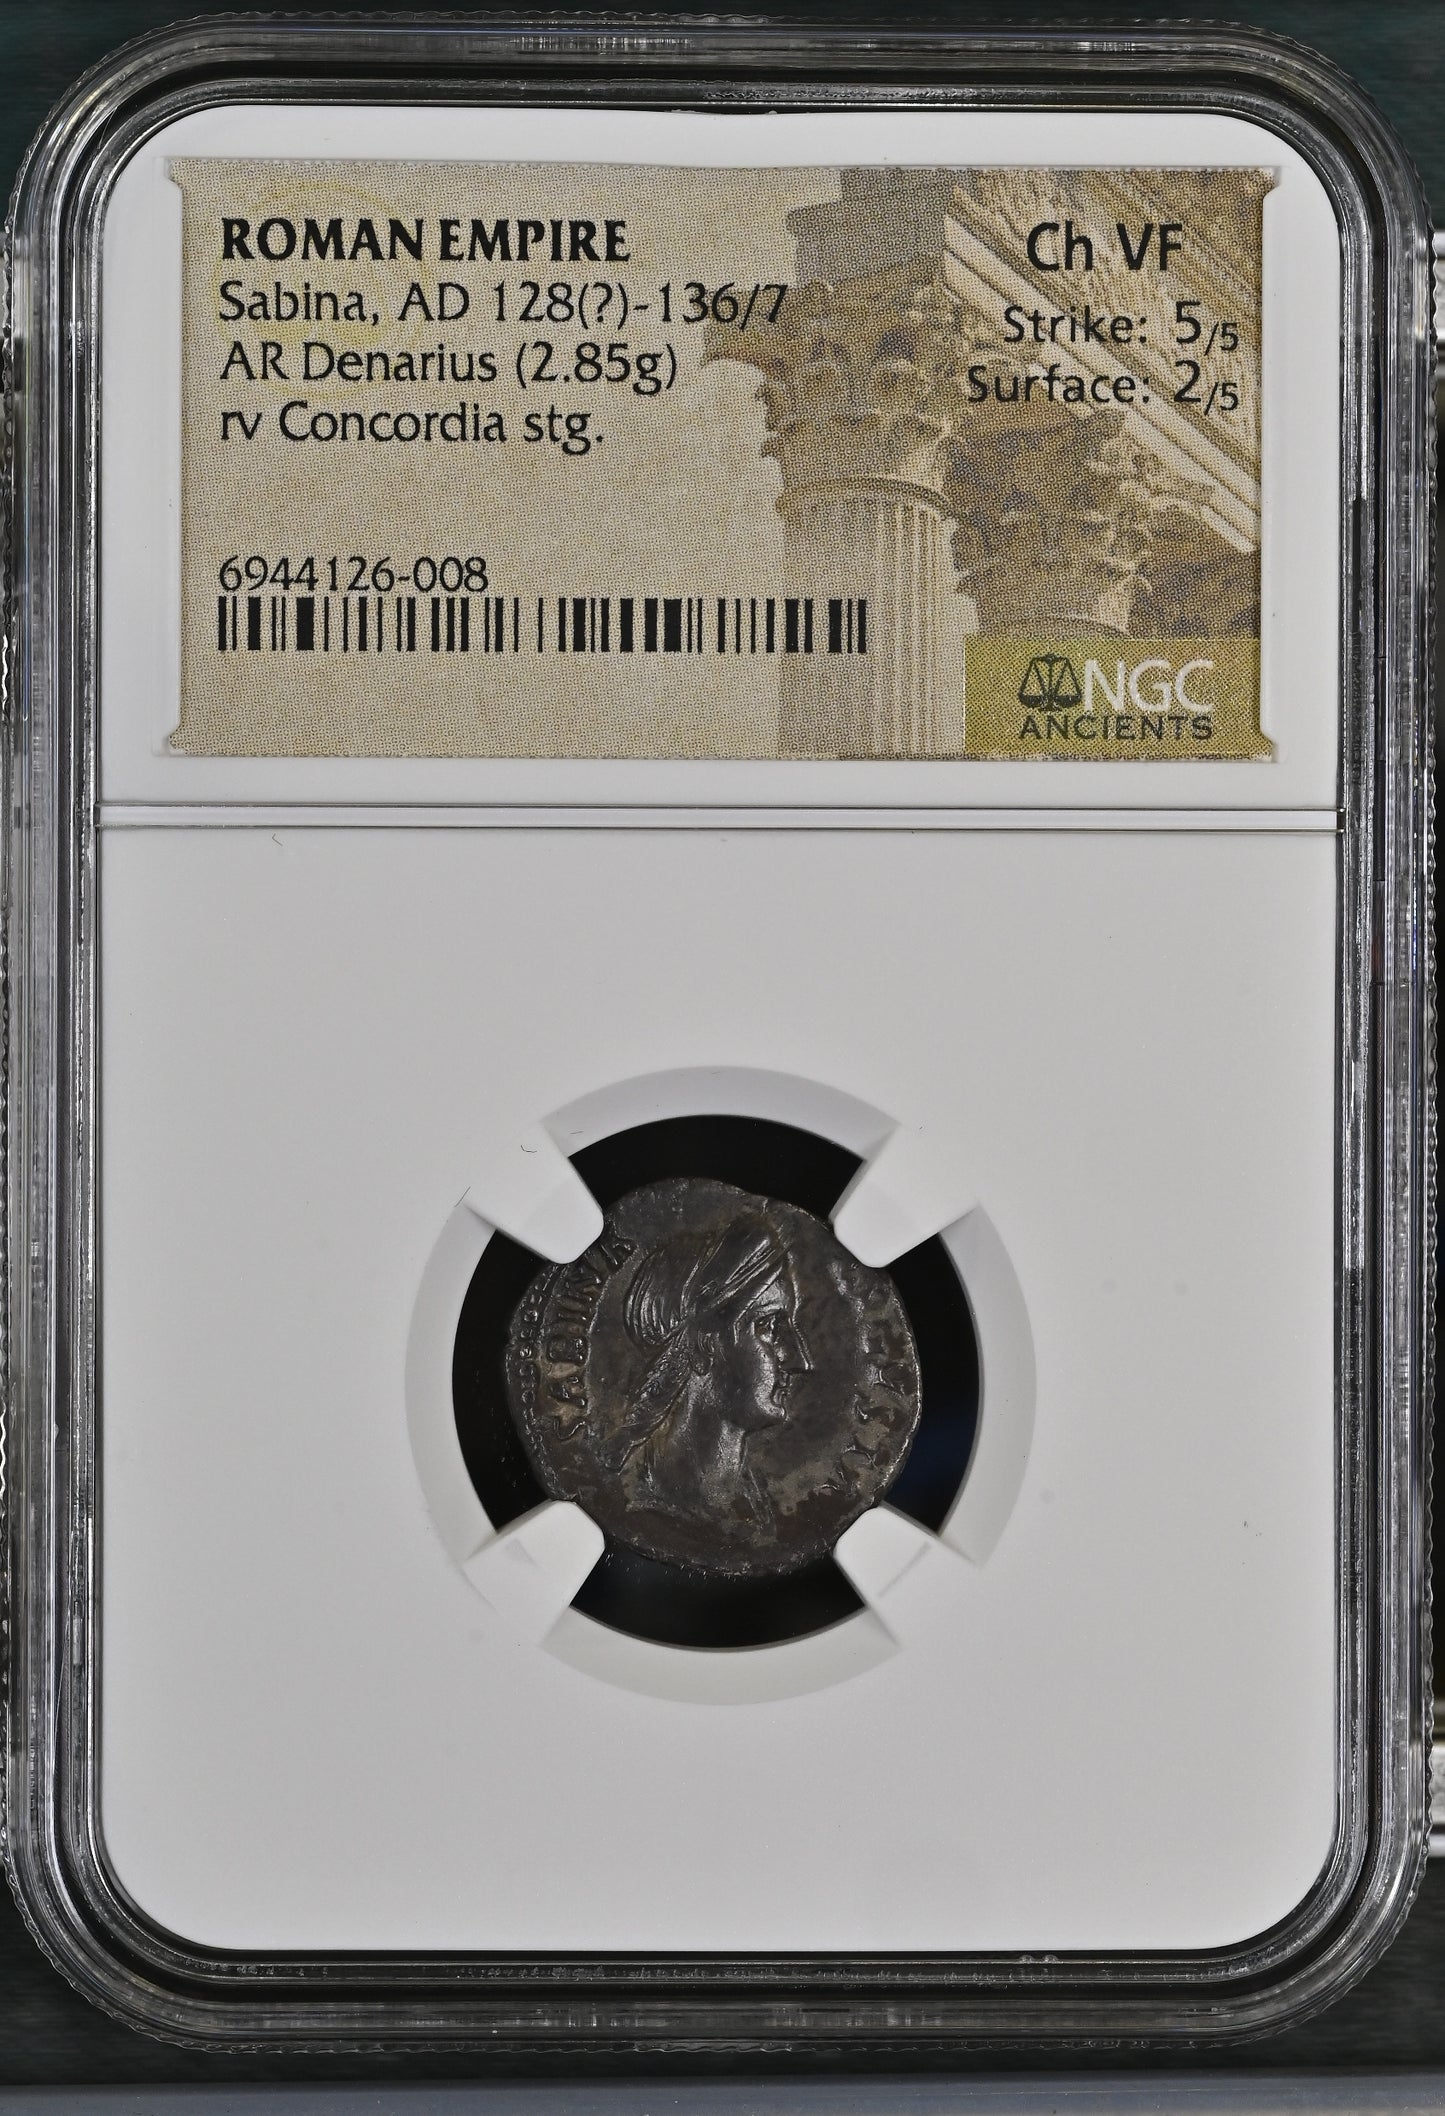 Roman Empire - Sabina - Silver Denarius - NGC Ch VF - RIC:2571